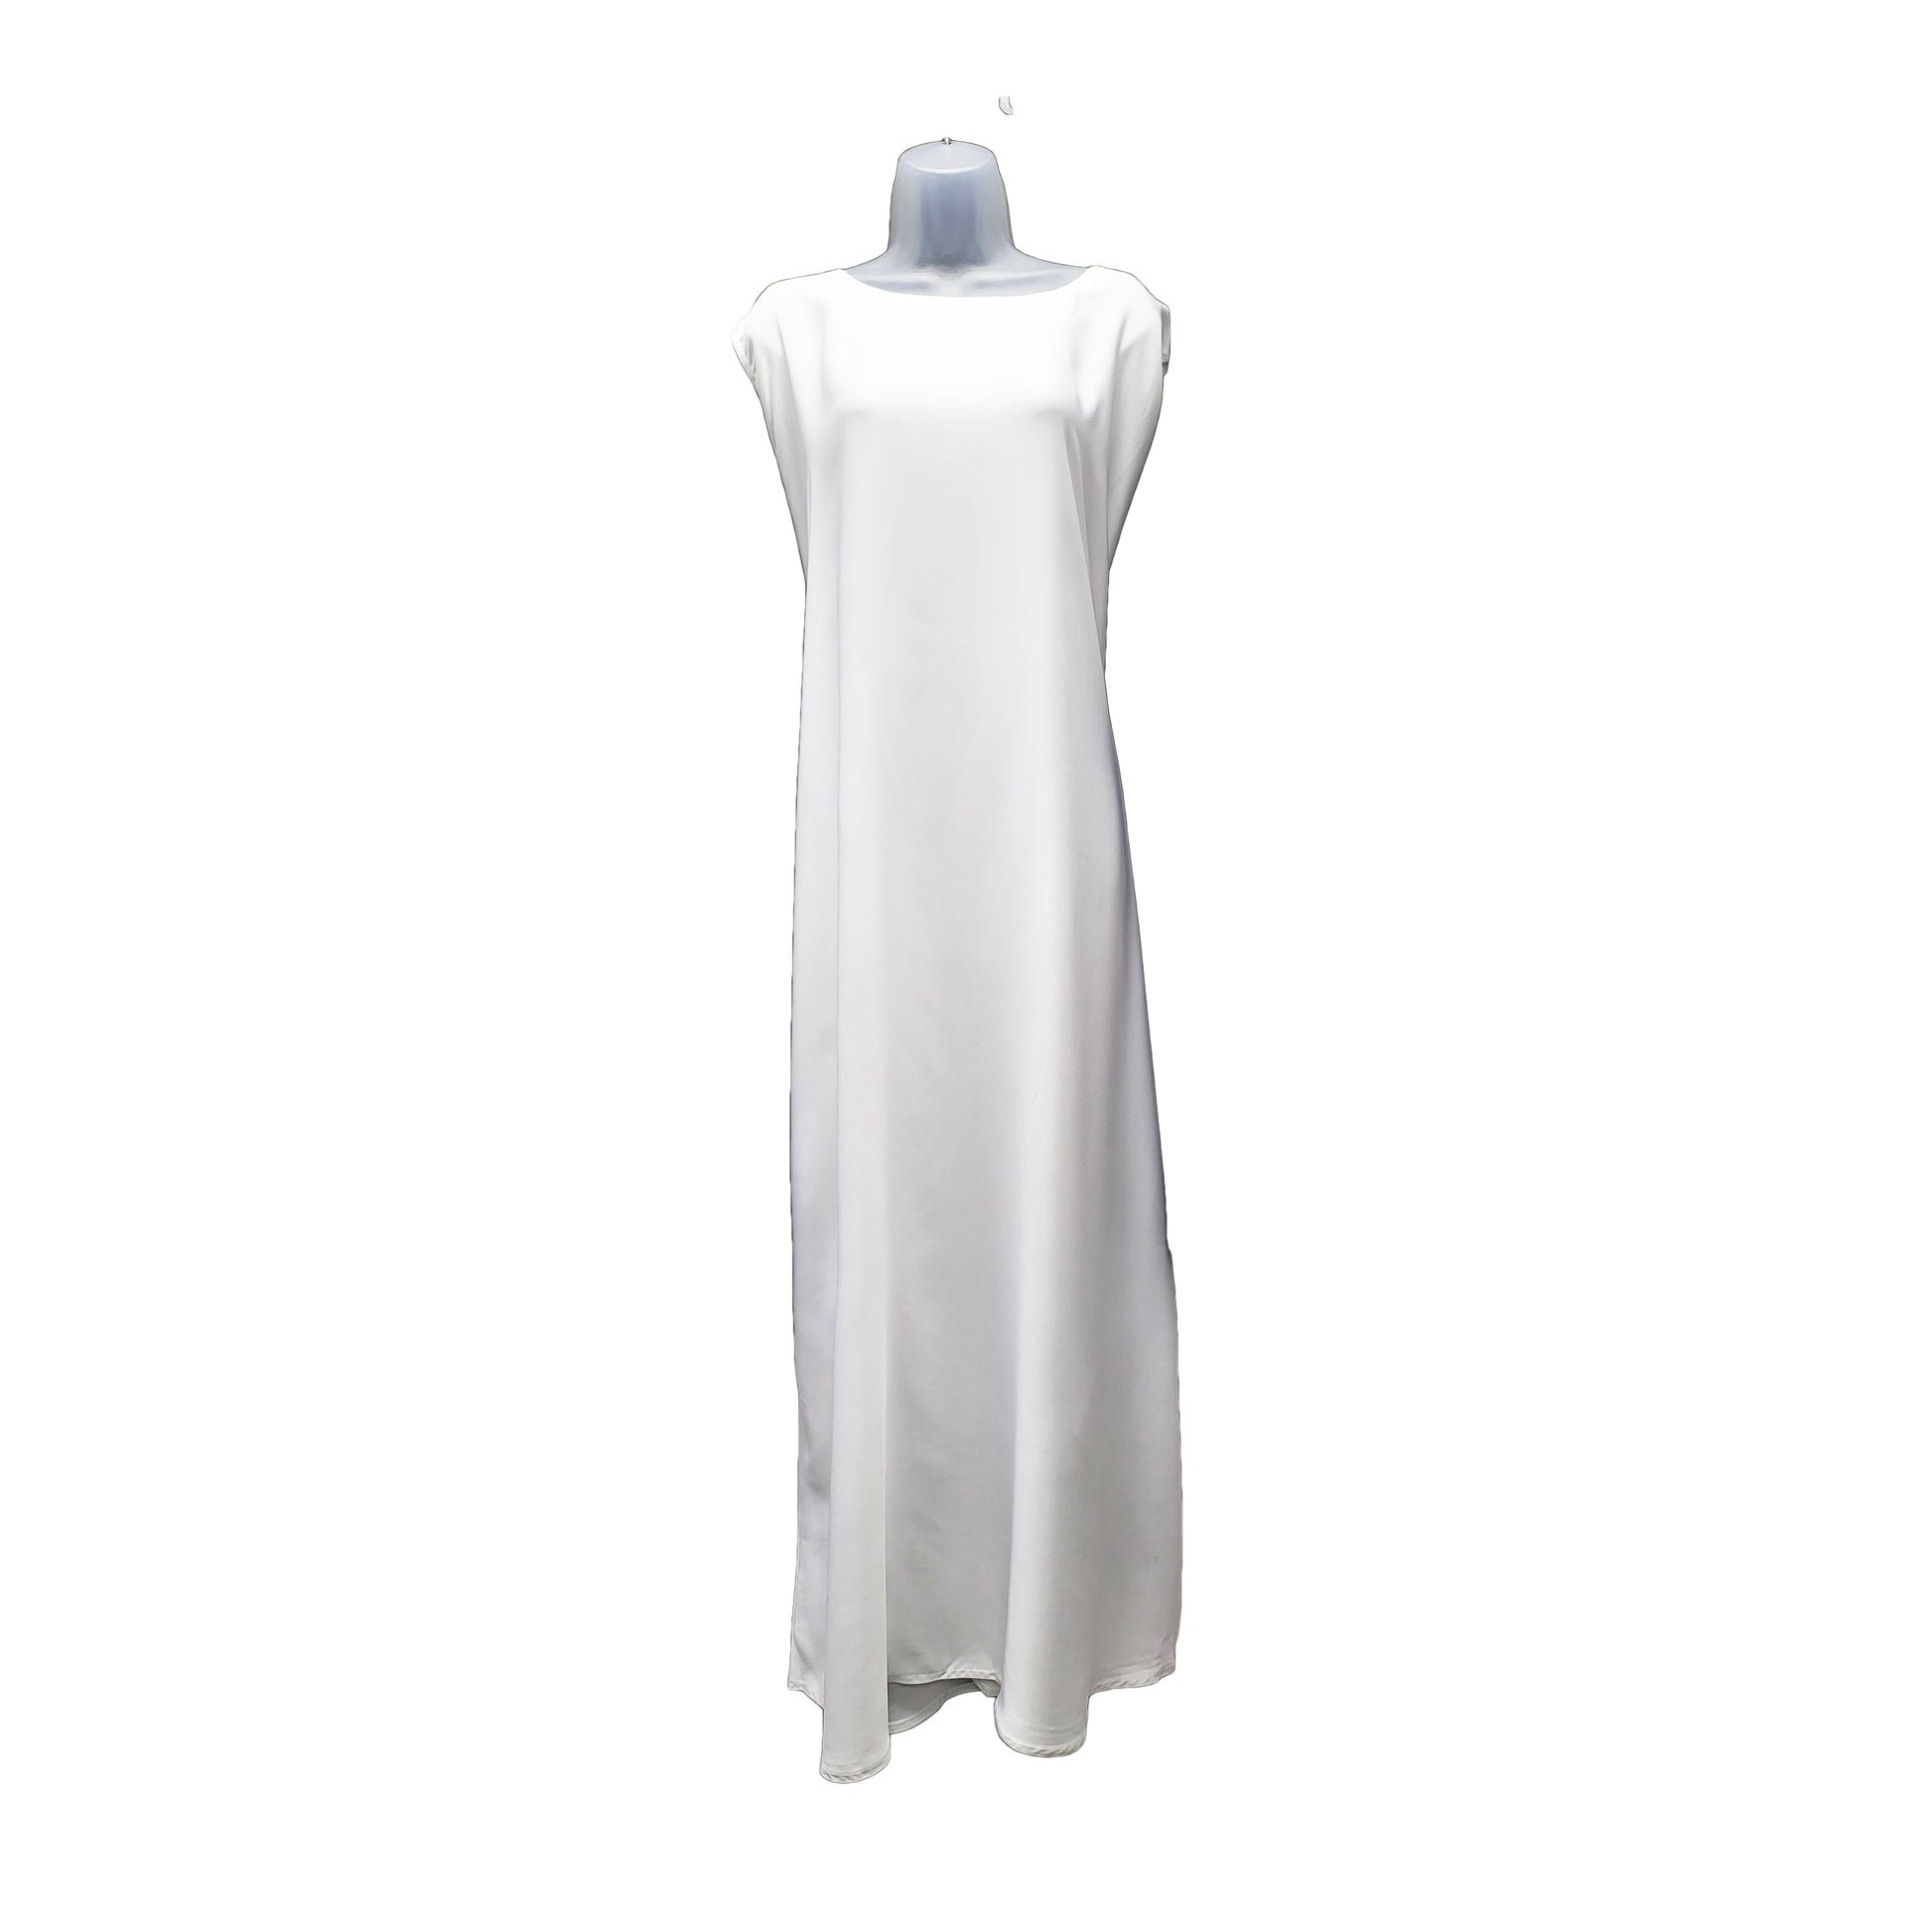 White slip dress under garment